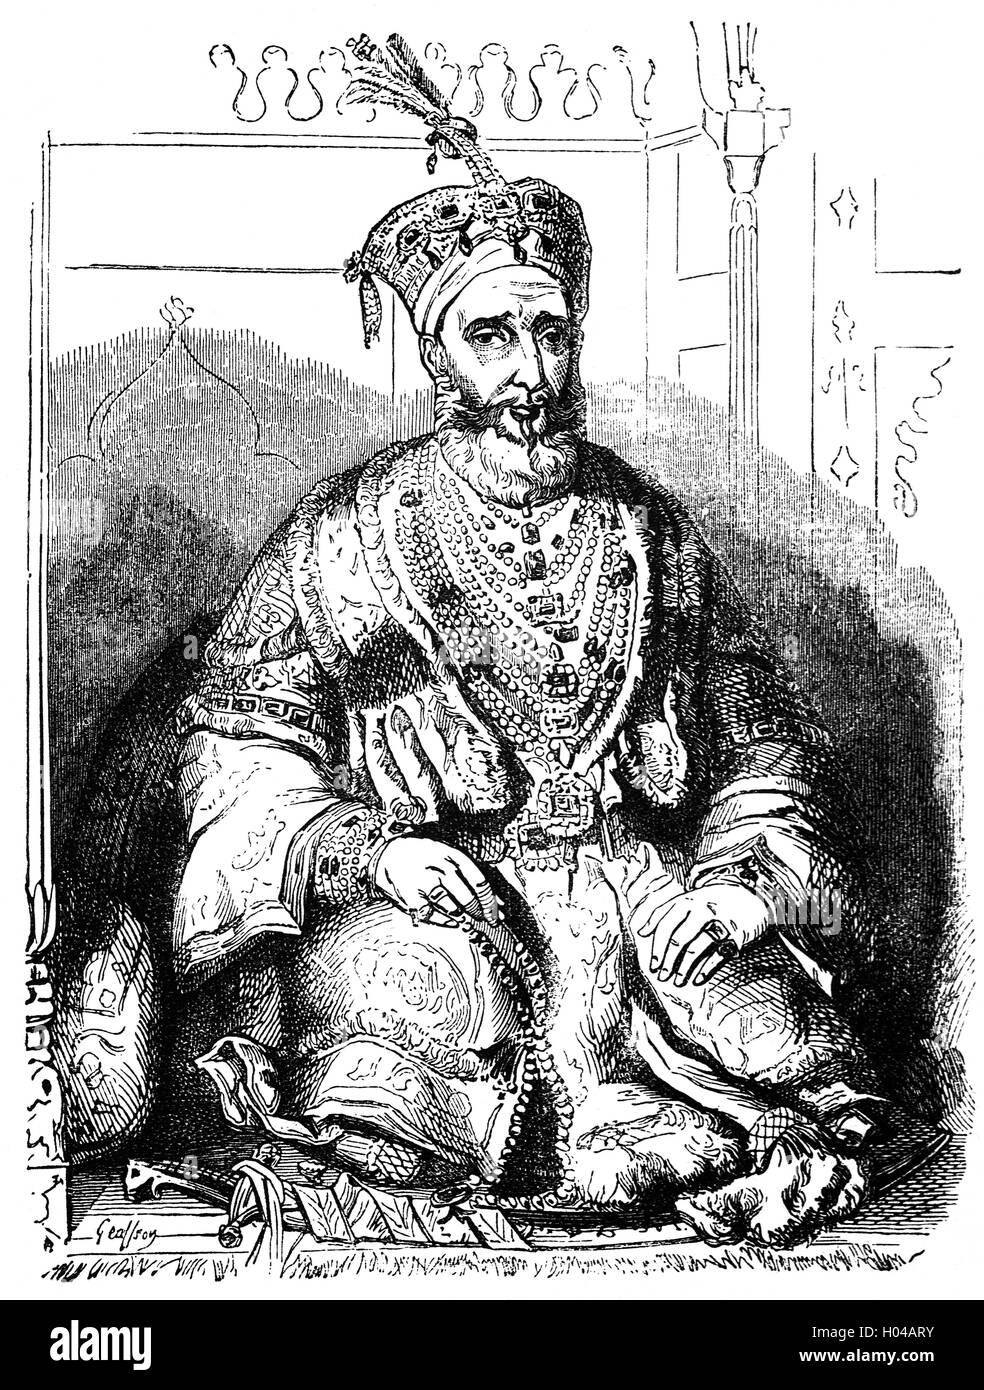 Mirza Abu Zafar Sirajuddin Muhammad Bahadur Shah Zafar era l'ultimo imperatore Mughal, un impero che esisteva solo di nome e la sua autorità fu limitato solo alla città di Delhi. A seguito del suo coinvolgimento nella ribellione indiana di 1857, la British esiliato lui a Rangoon in British-controllato la Birmania, dopo perseguire lui sulla cospirazione di tasse in un tribunale canguro. Foto Stock